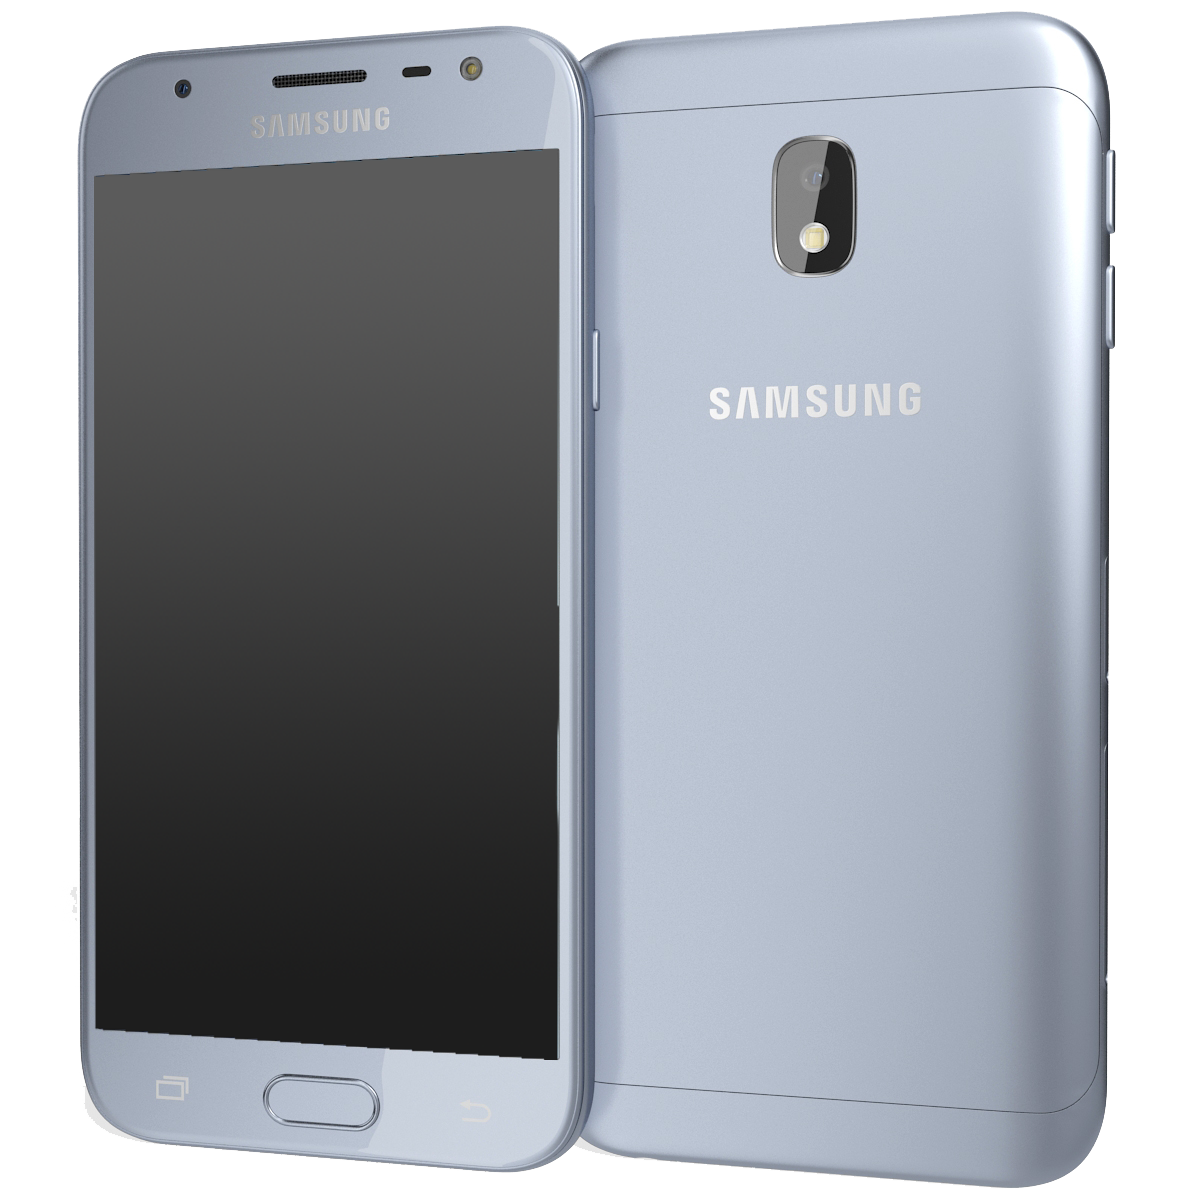 Samsung Galaxy J3 (2017) Dual-SIM blau - Ohne Vertrag